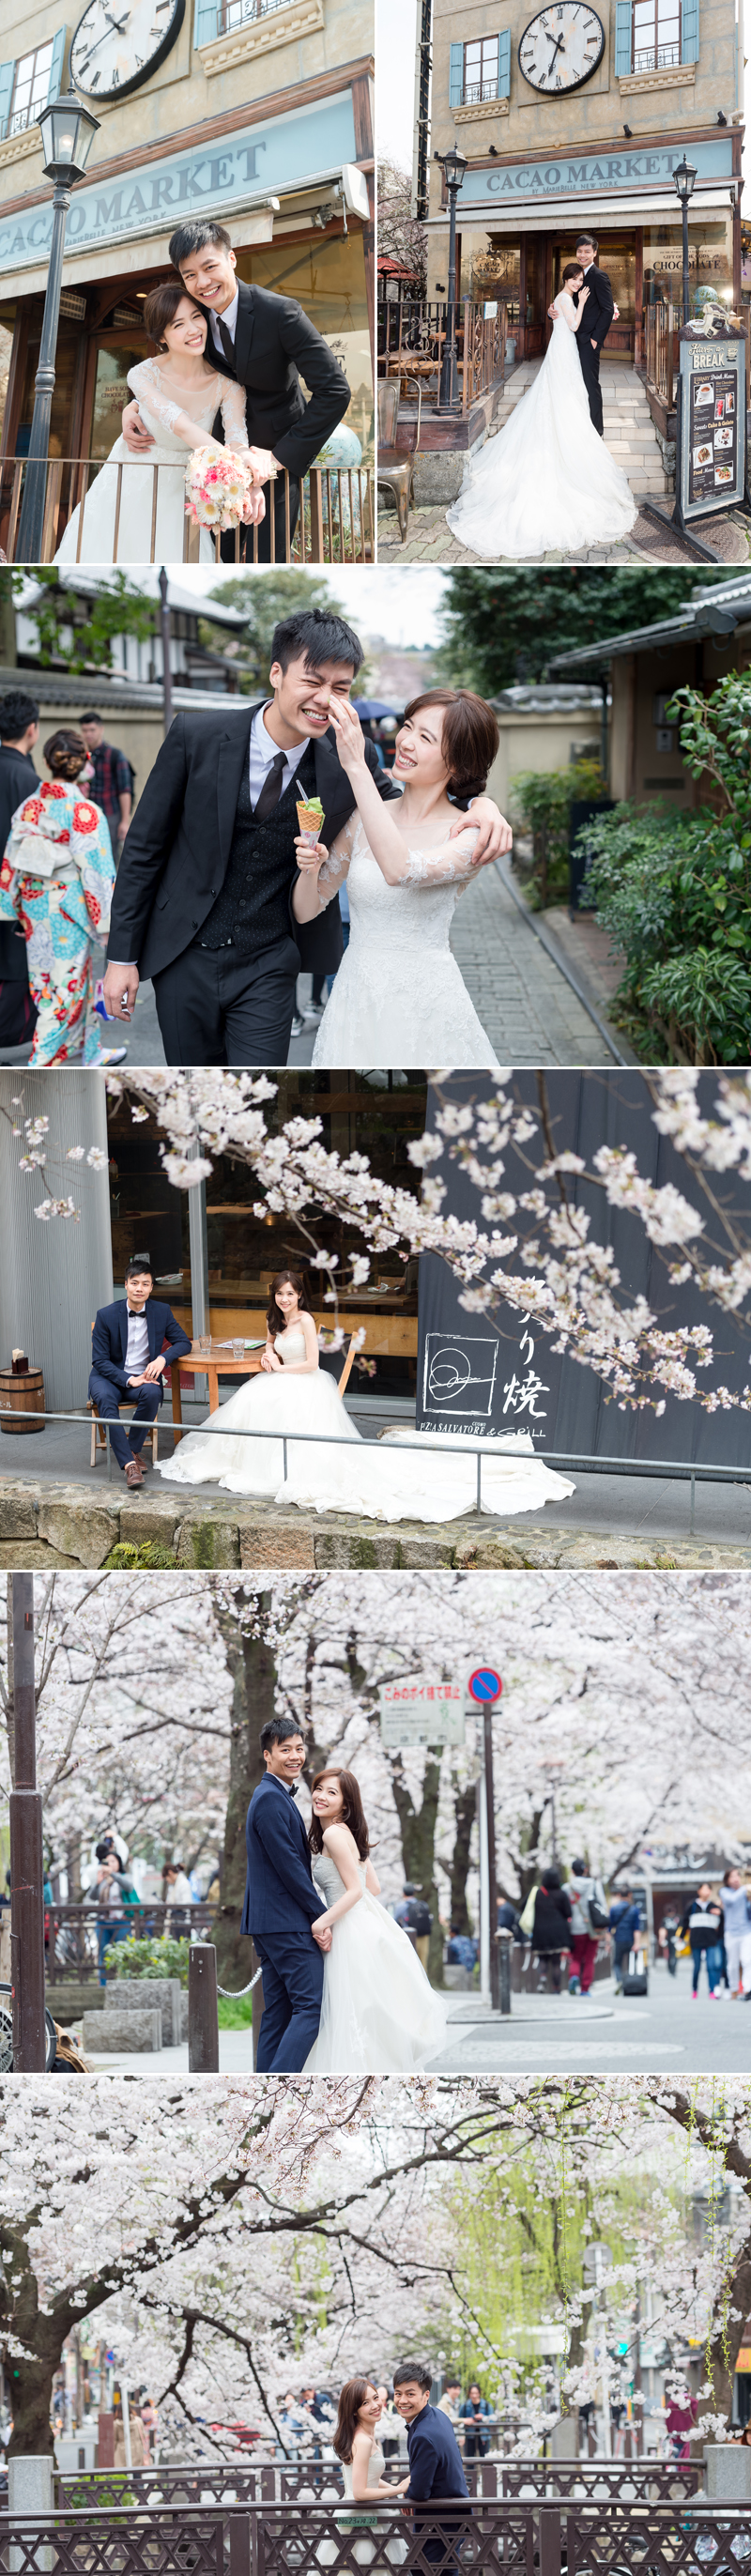 櫻花婚紗 | 攝影師專訪 浪漫京都 櫻花 美景旅拍 婚紗